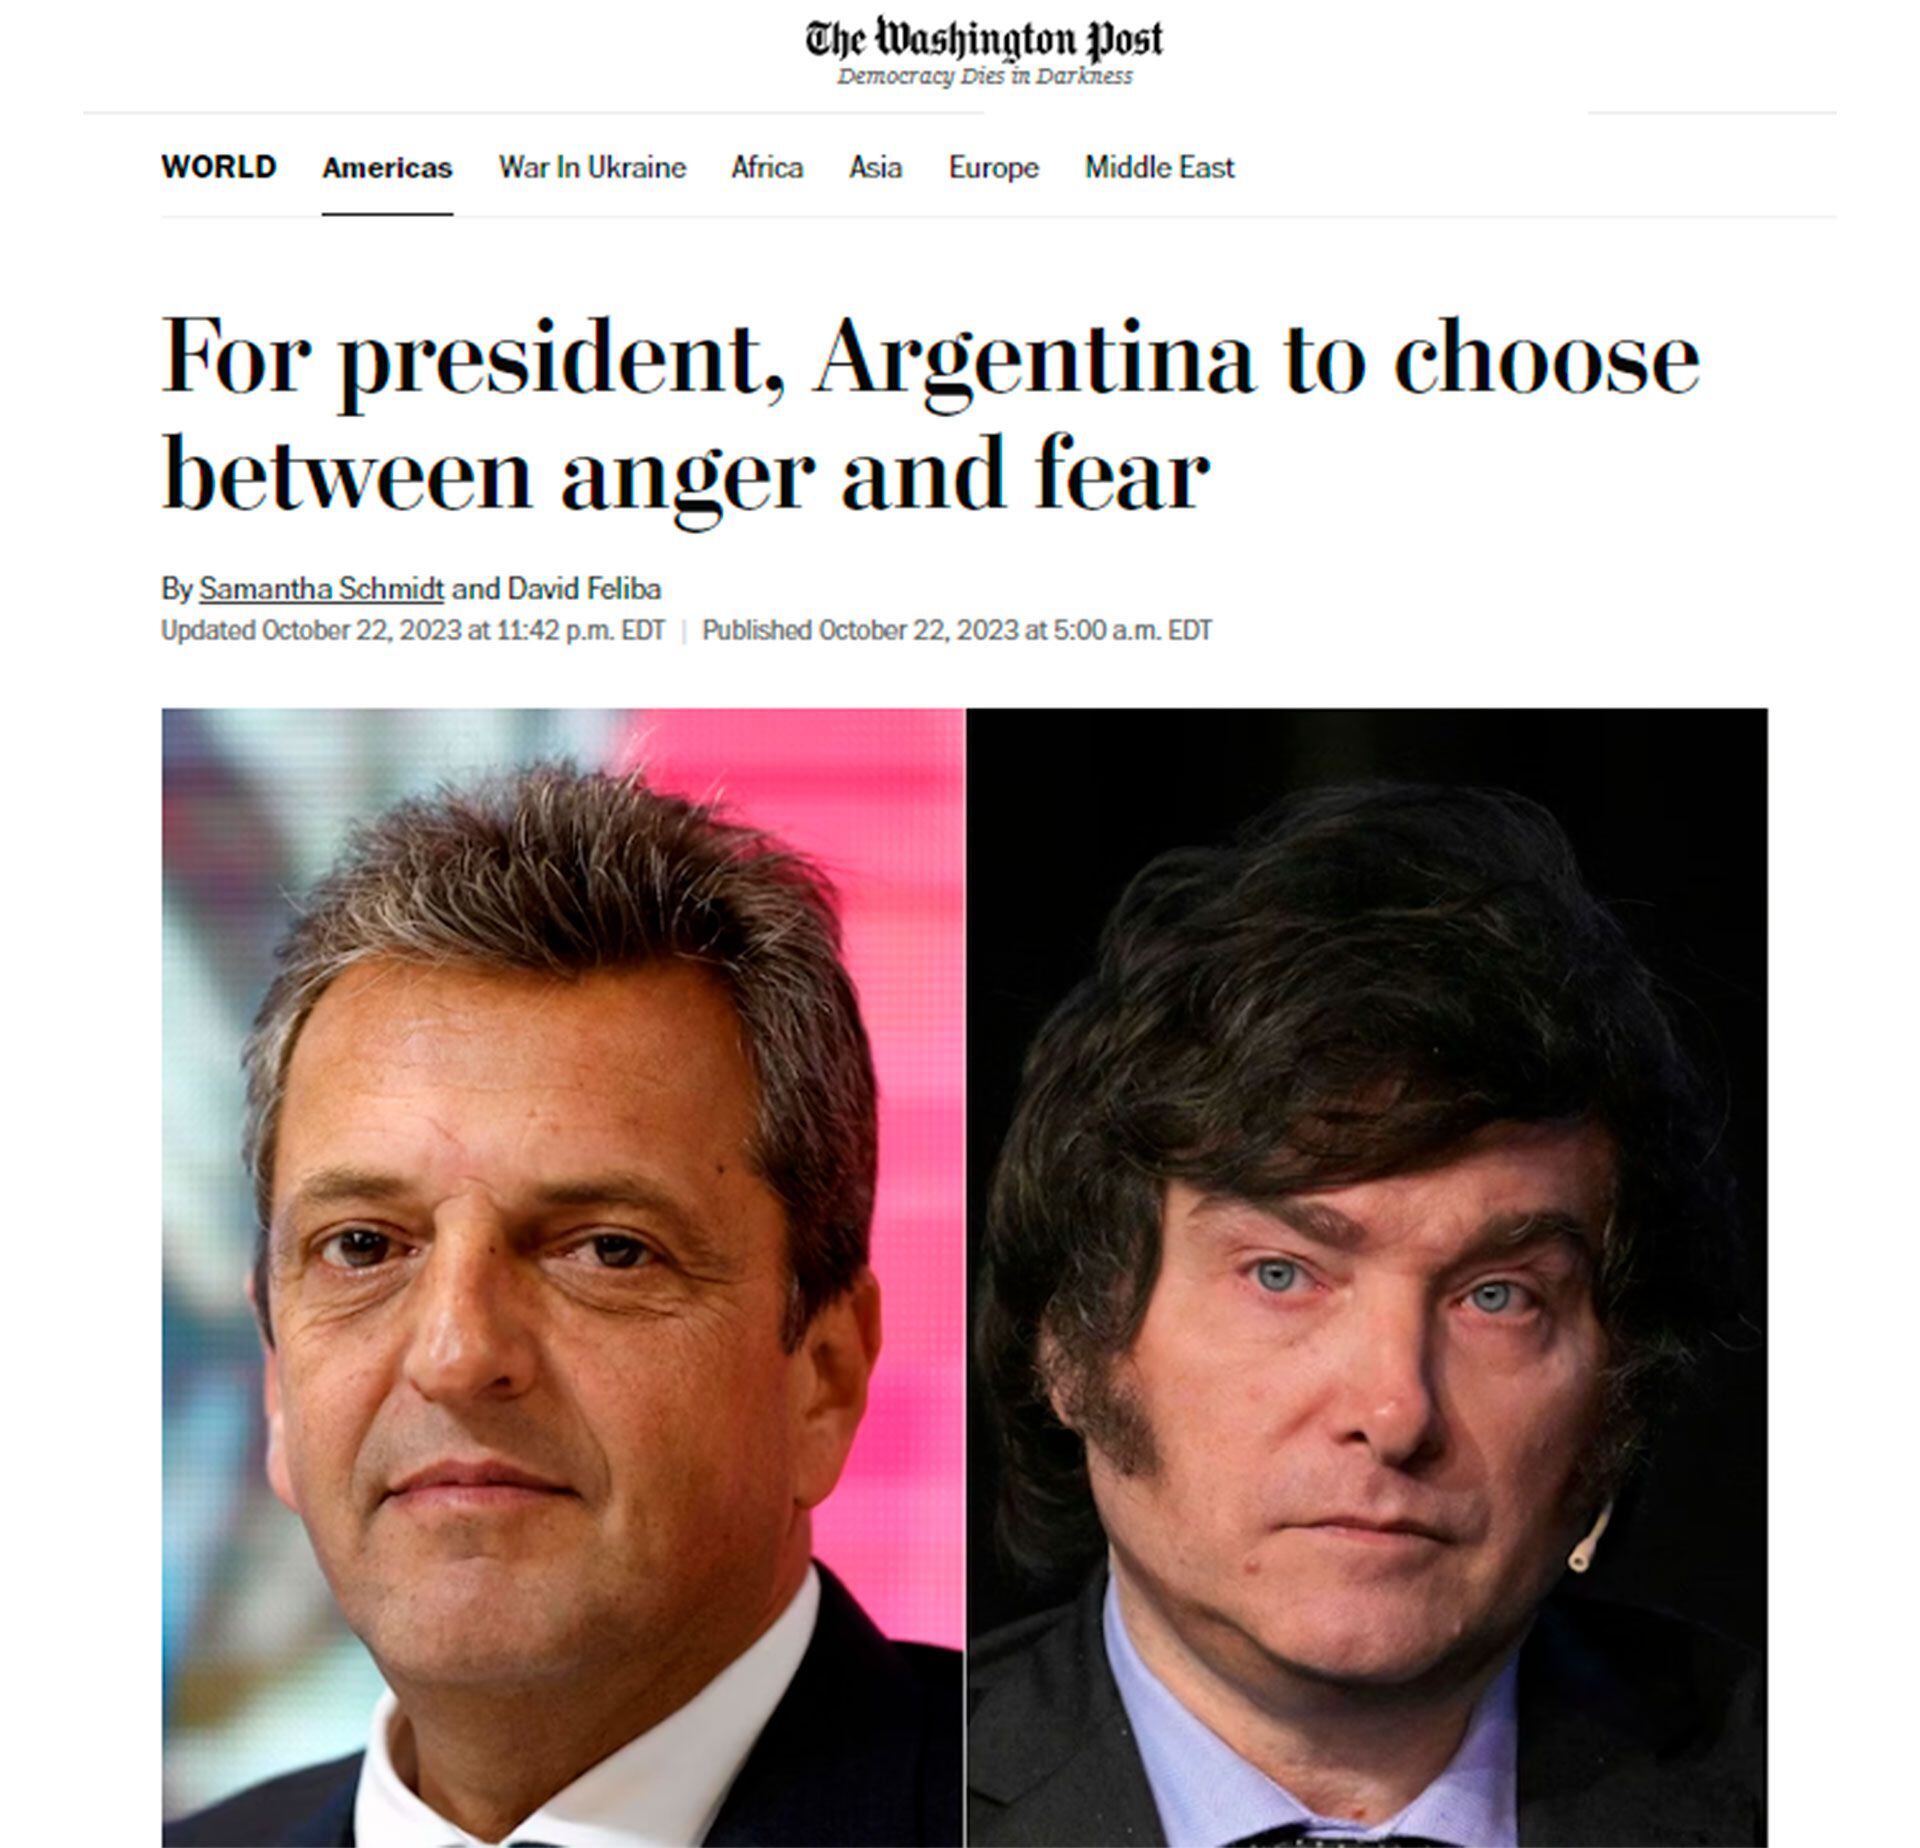 “Para el presidente, Argentina debe elegir entre la ira y el miedo”.